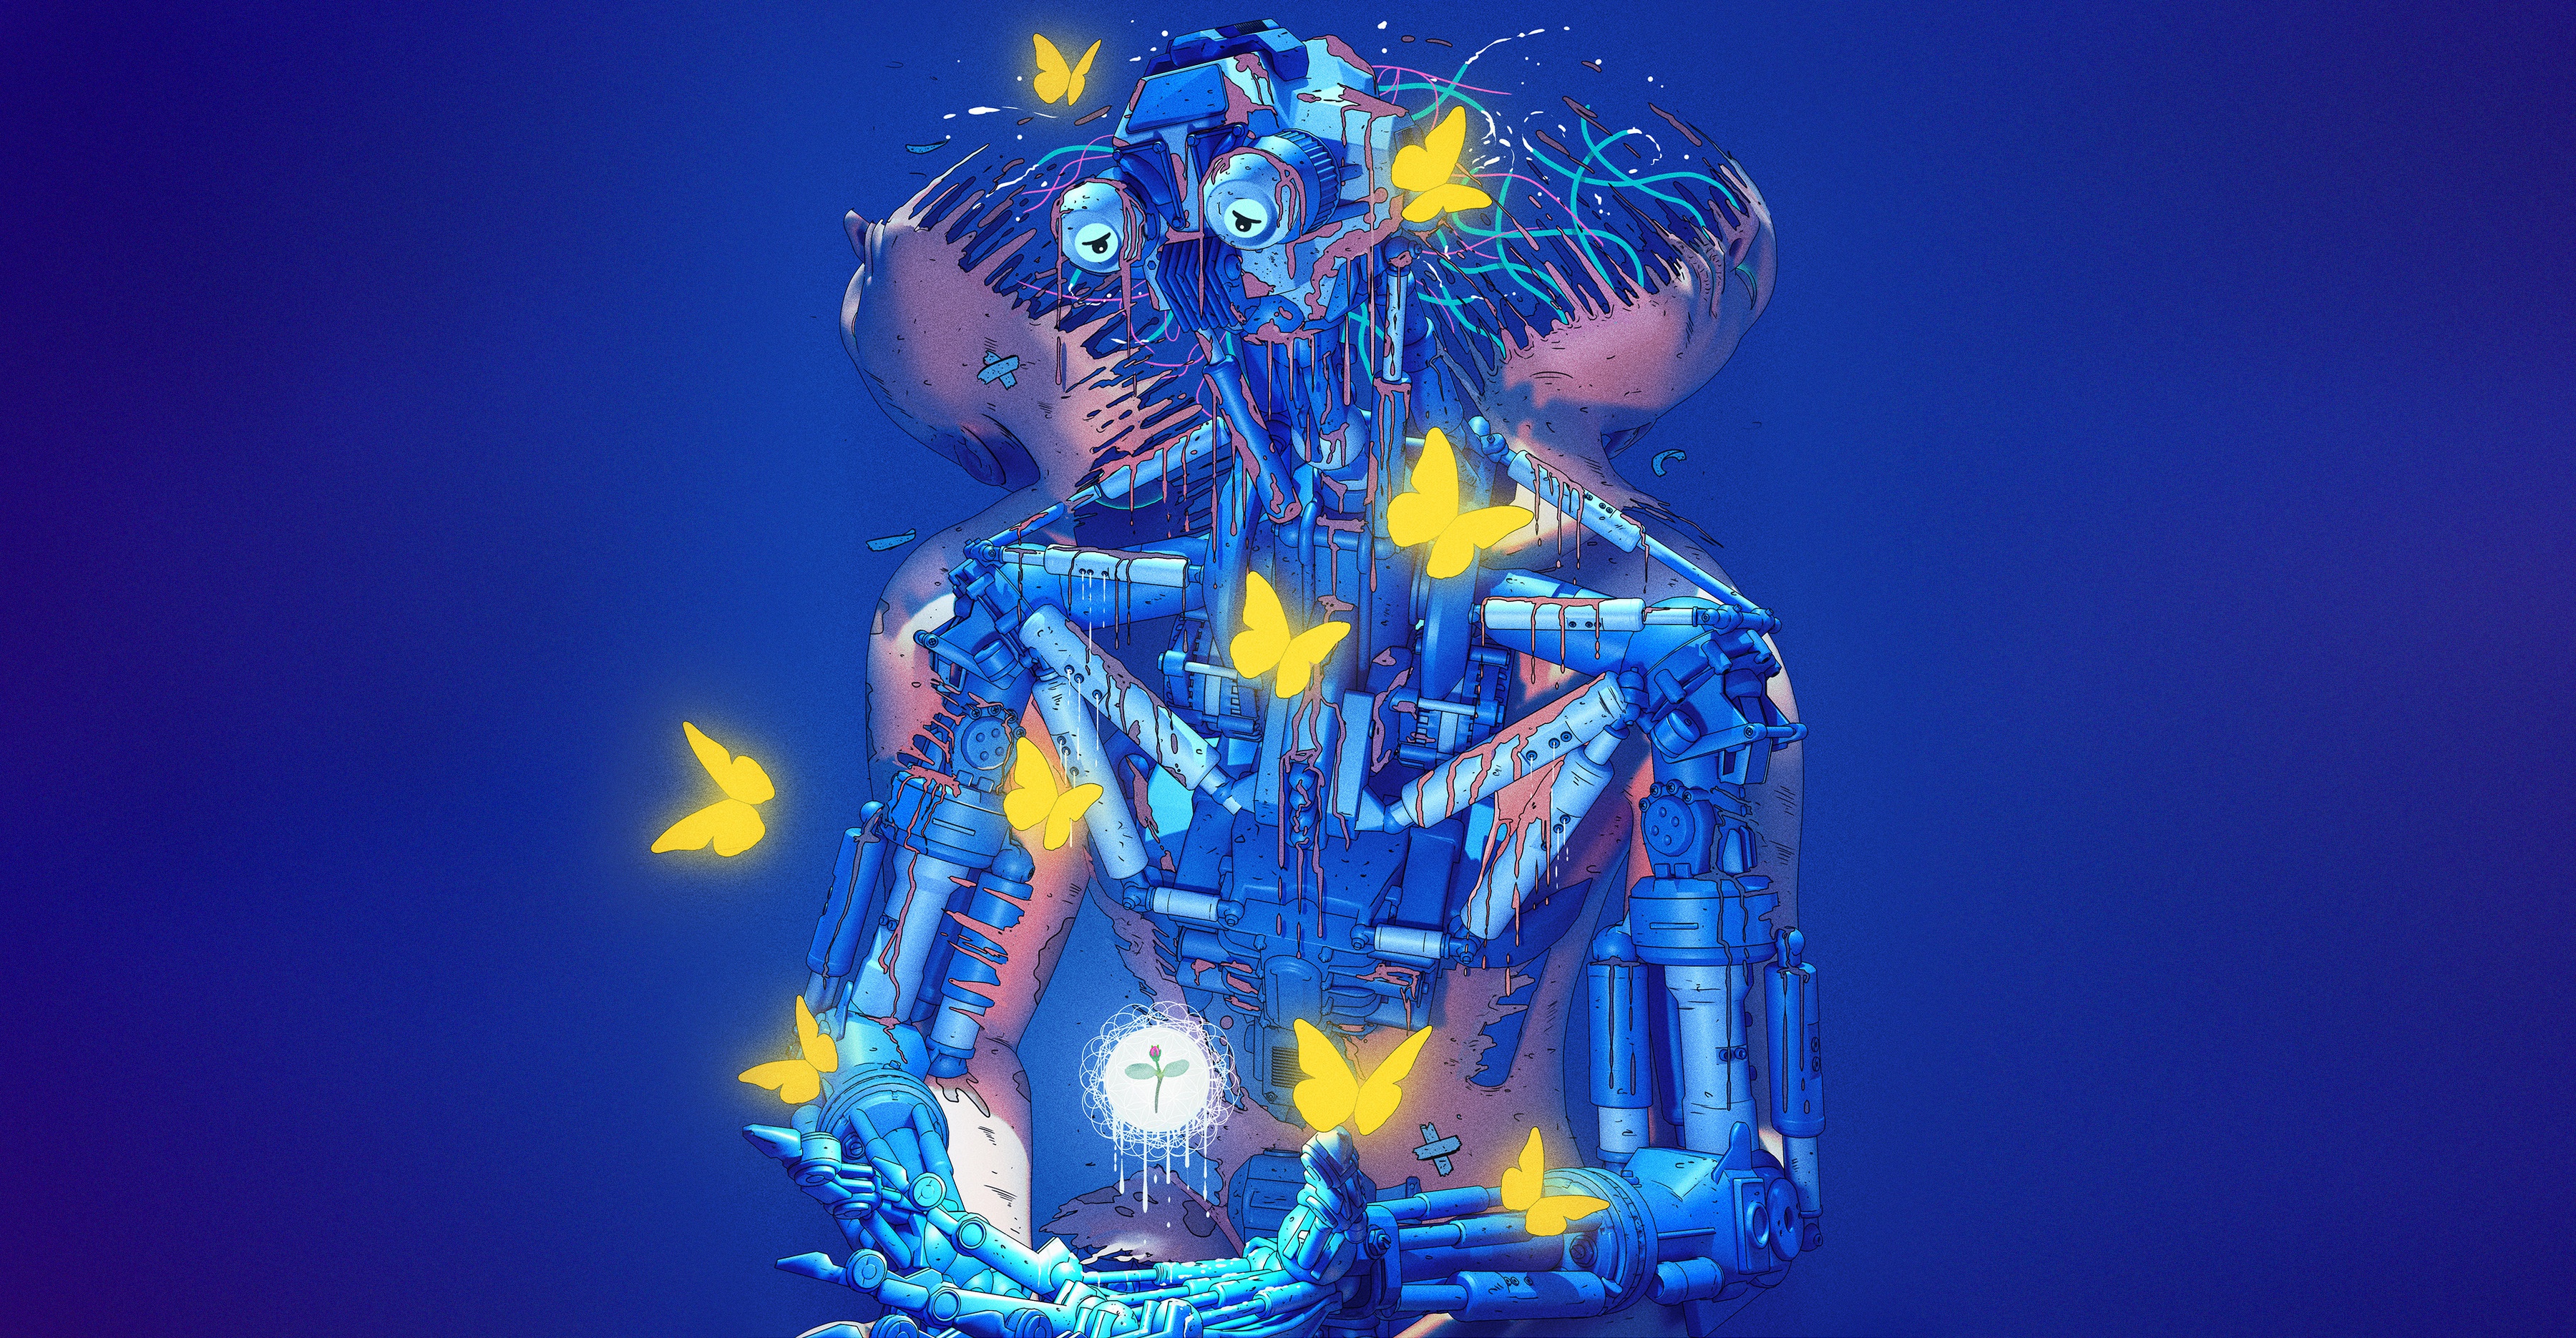 General 3600x1870 Nick Sullo digital art cyberpunk butterfly fantasy art